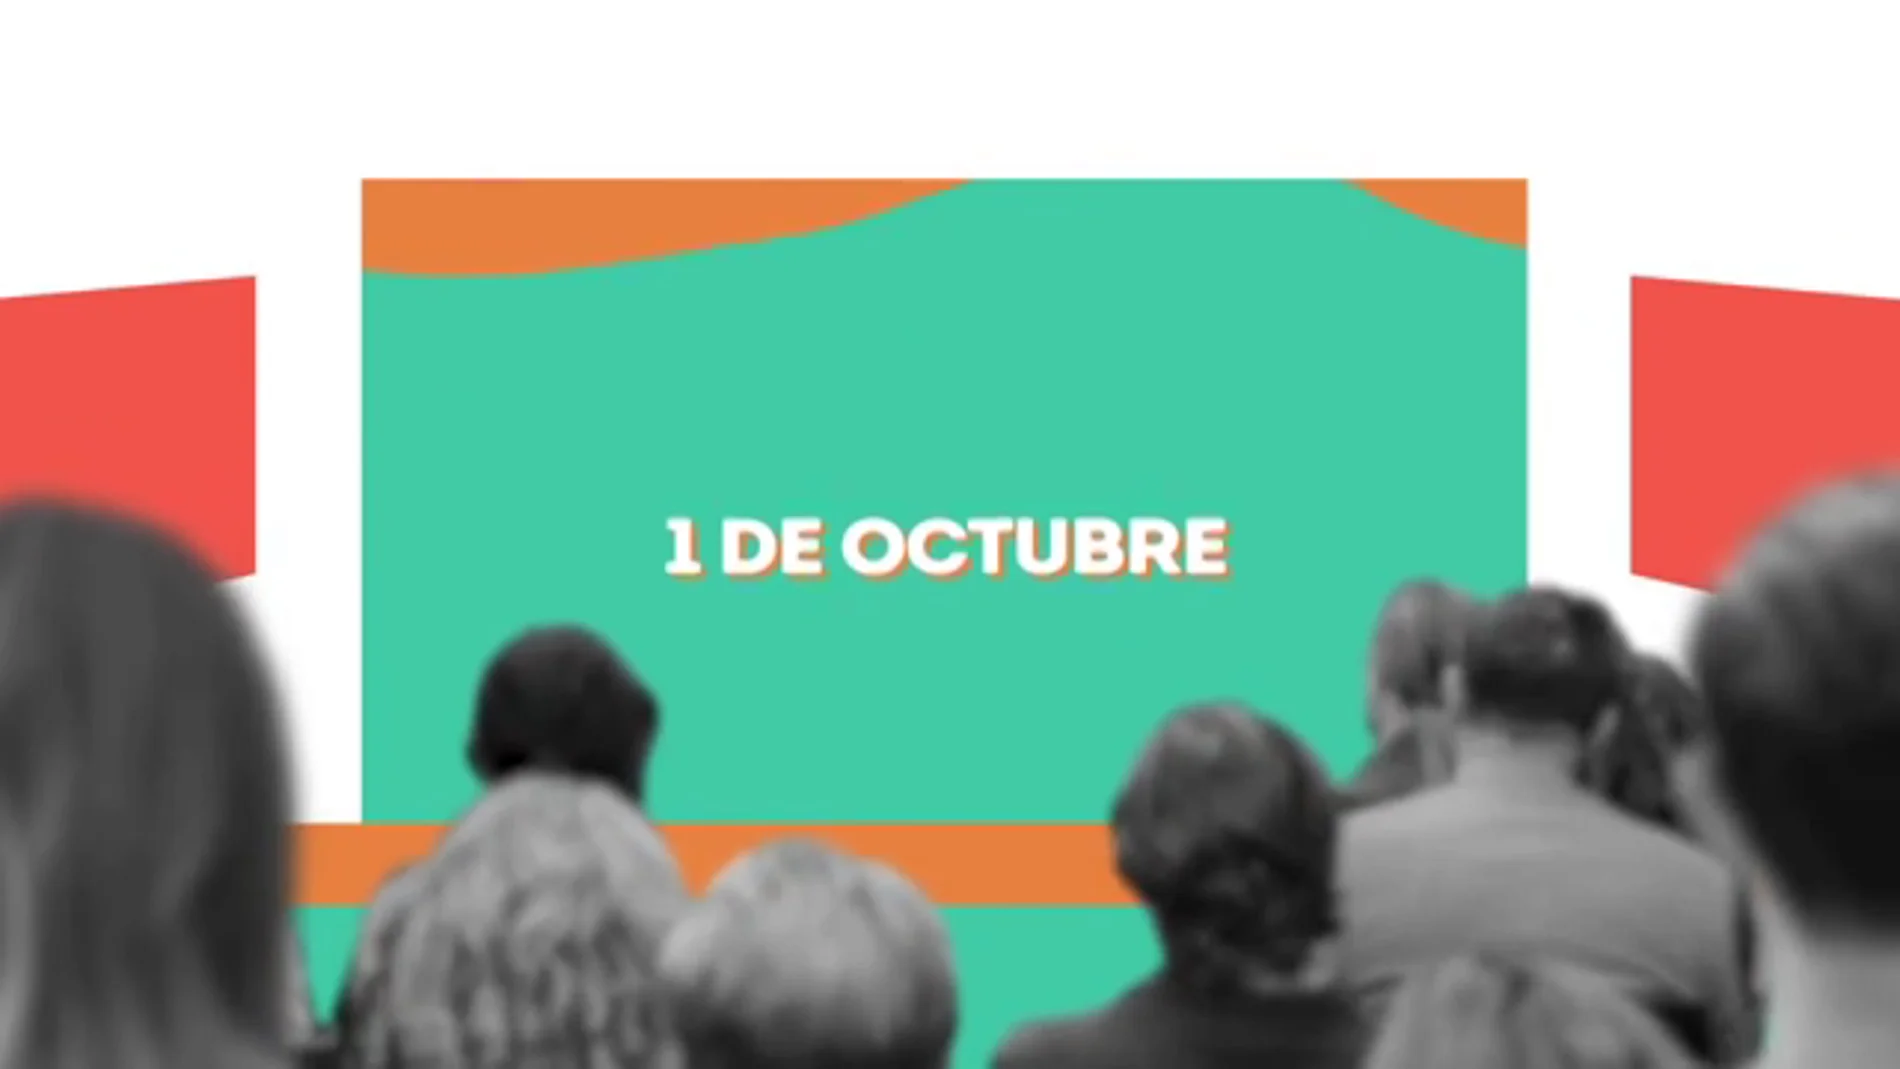 El primer Encuentro Mentes AMI se celebrará el día 1 de octubre en Kinépolis Ciudad de la Imagen, Madrid 